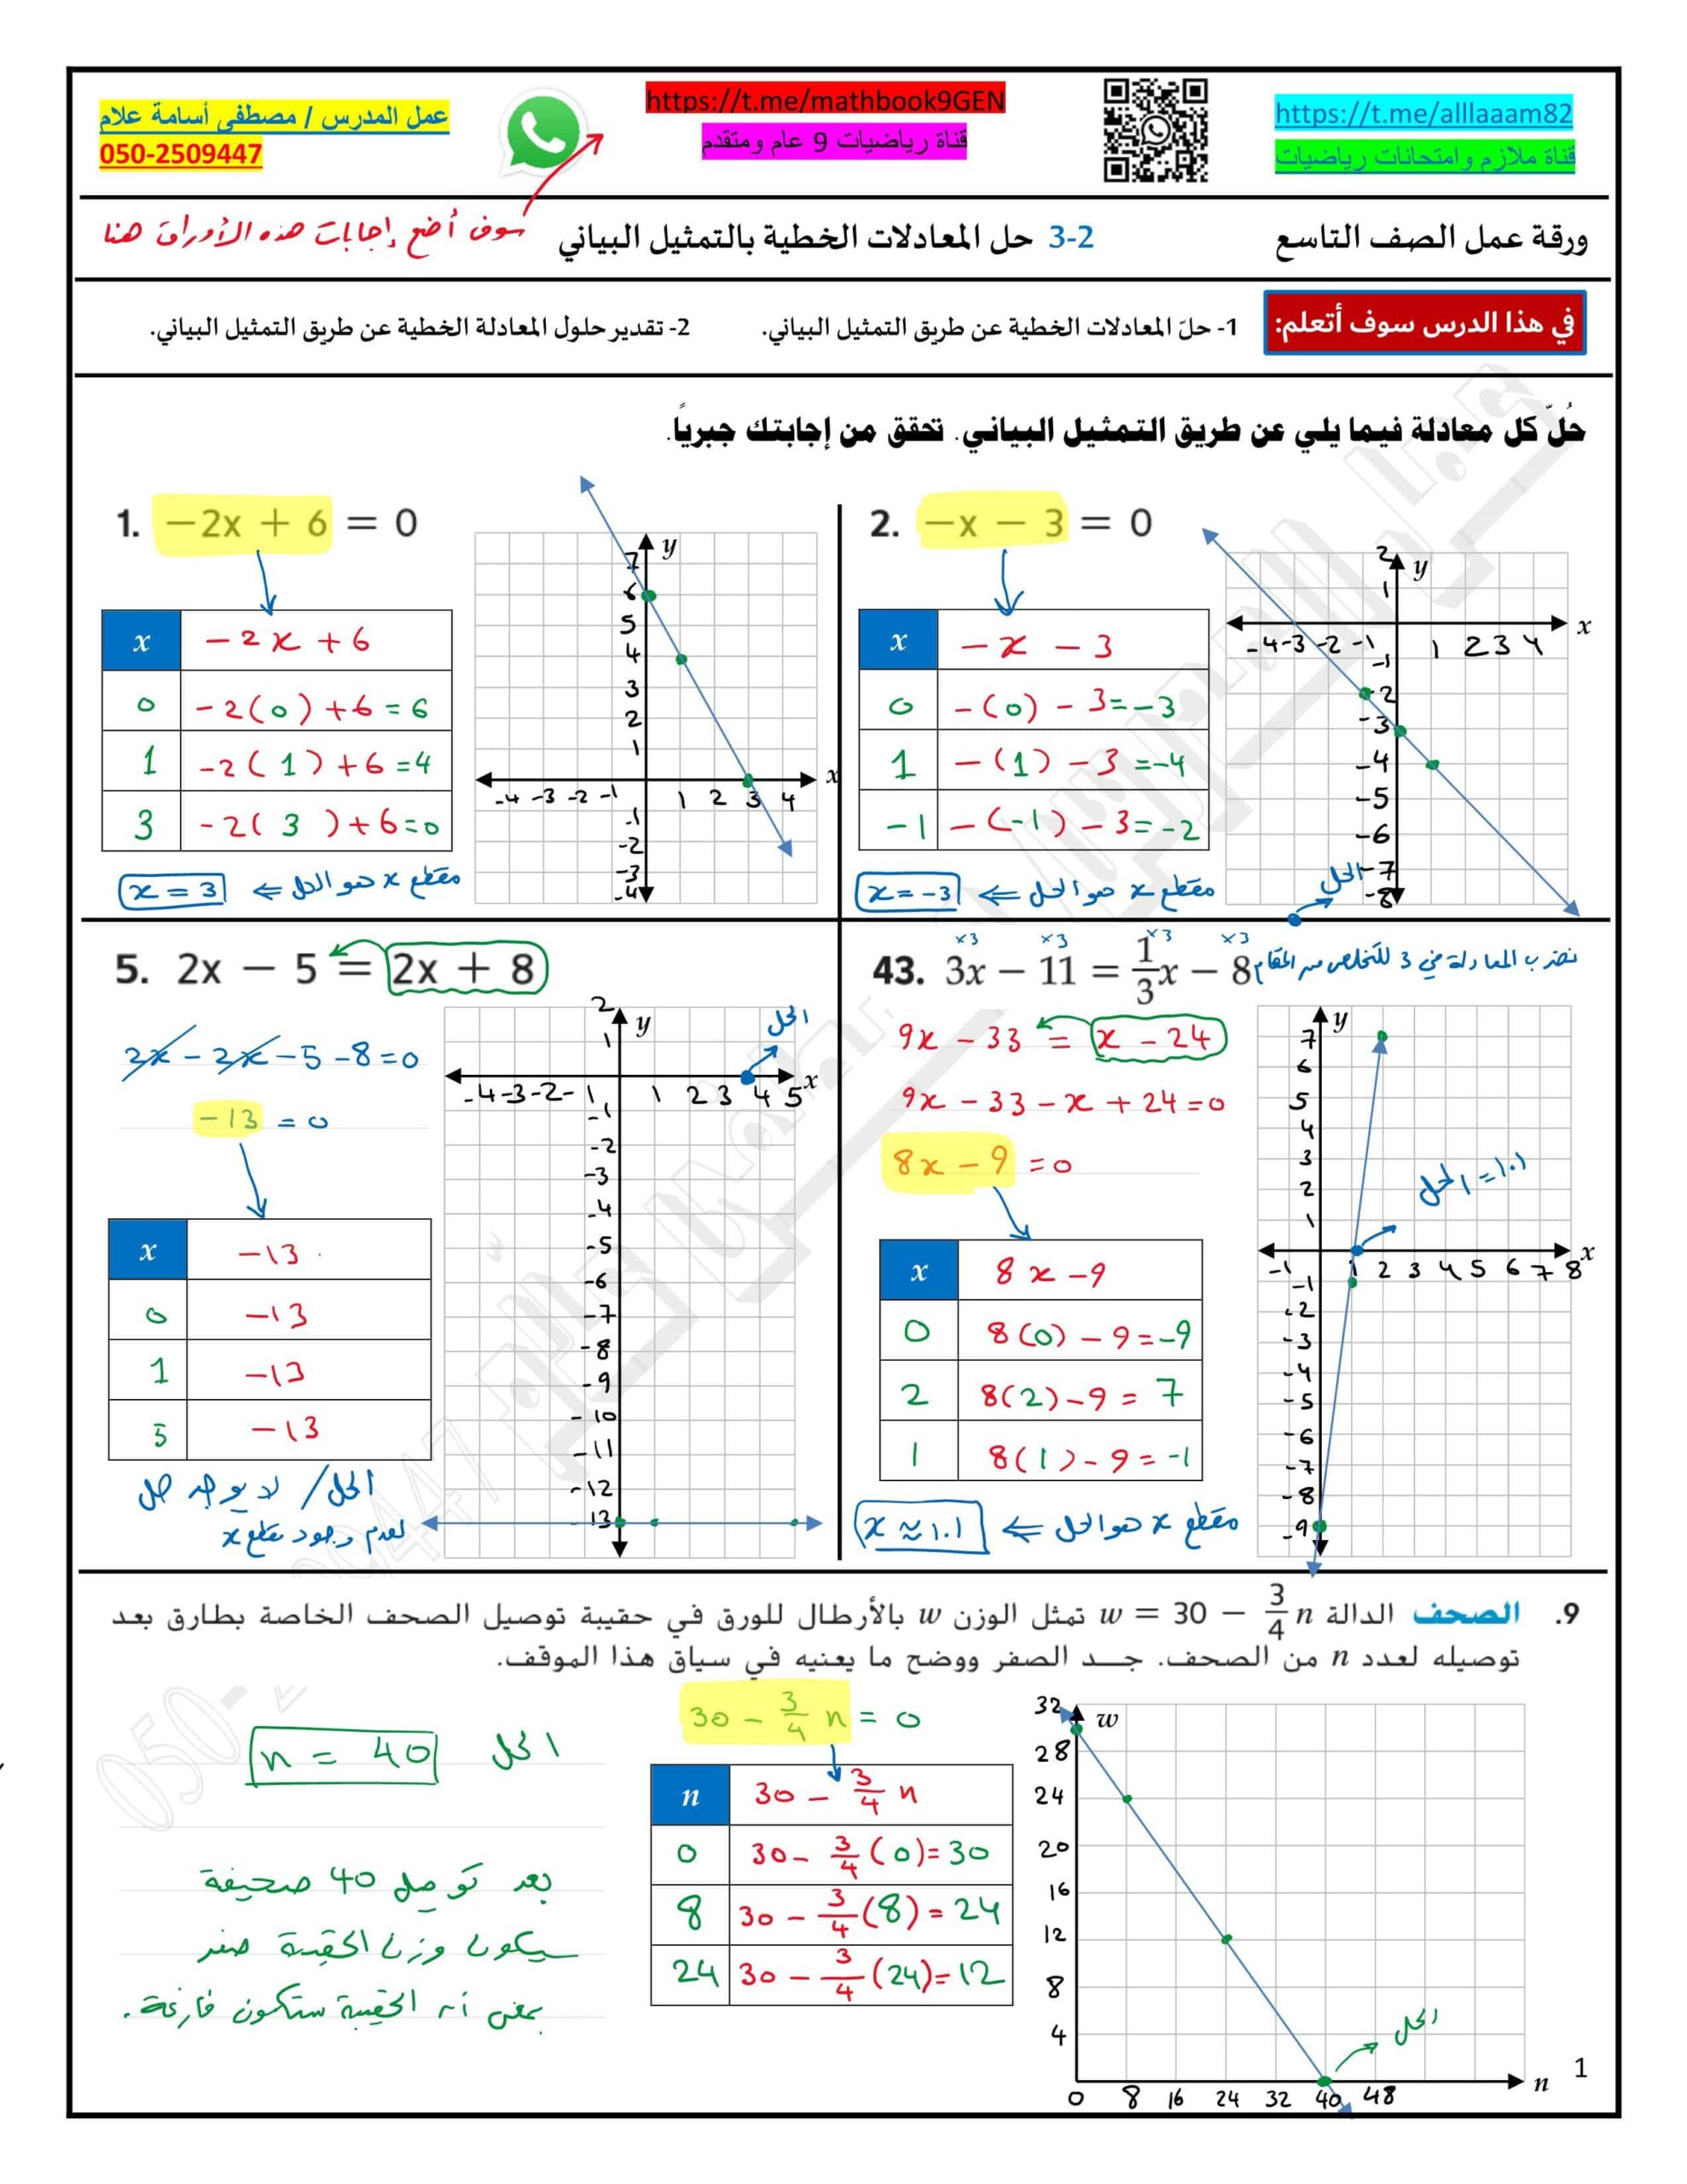 حل ورقة عمل حل المعادلات الخطية بالتمثيل البياني الرياضيات المتكاملة الصف التاسع